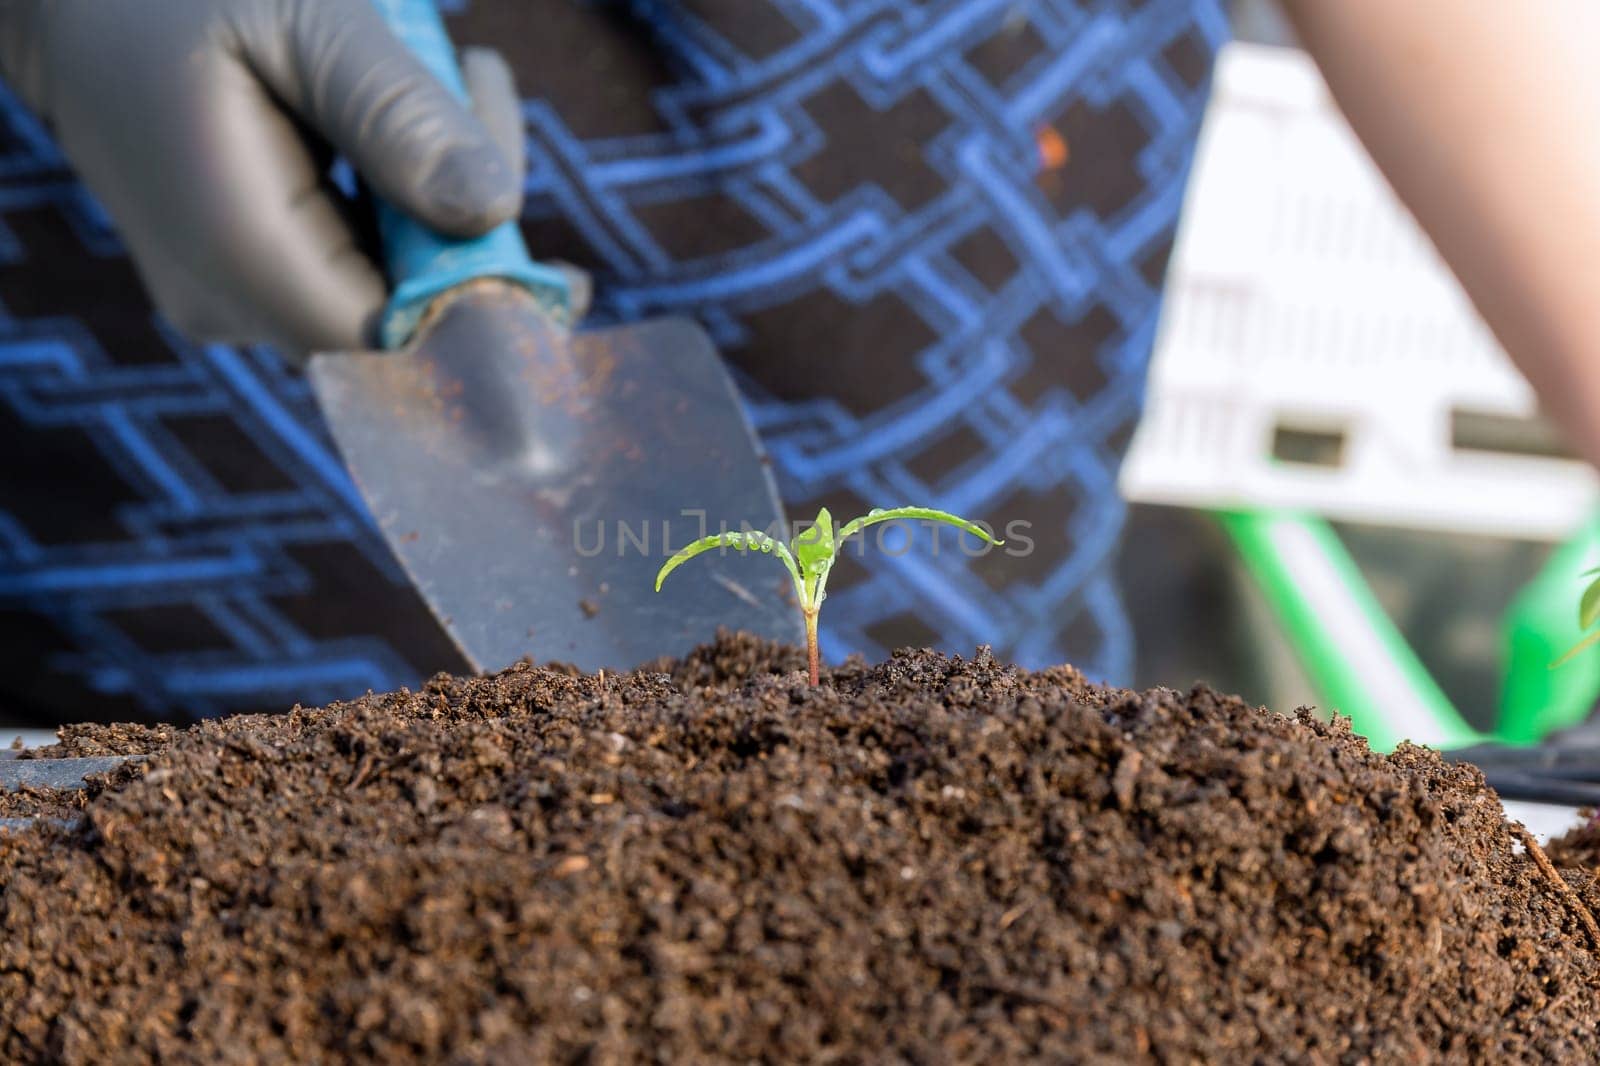 Adequate spacing between seedlings is vital during transplantation to allow proper airflow.